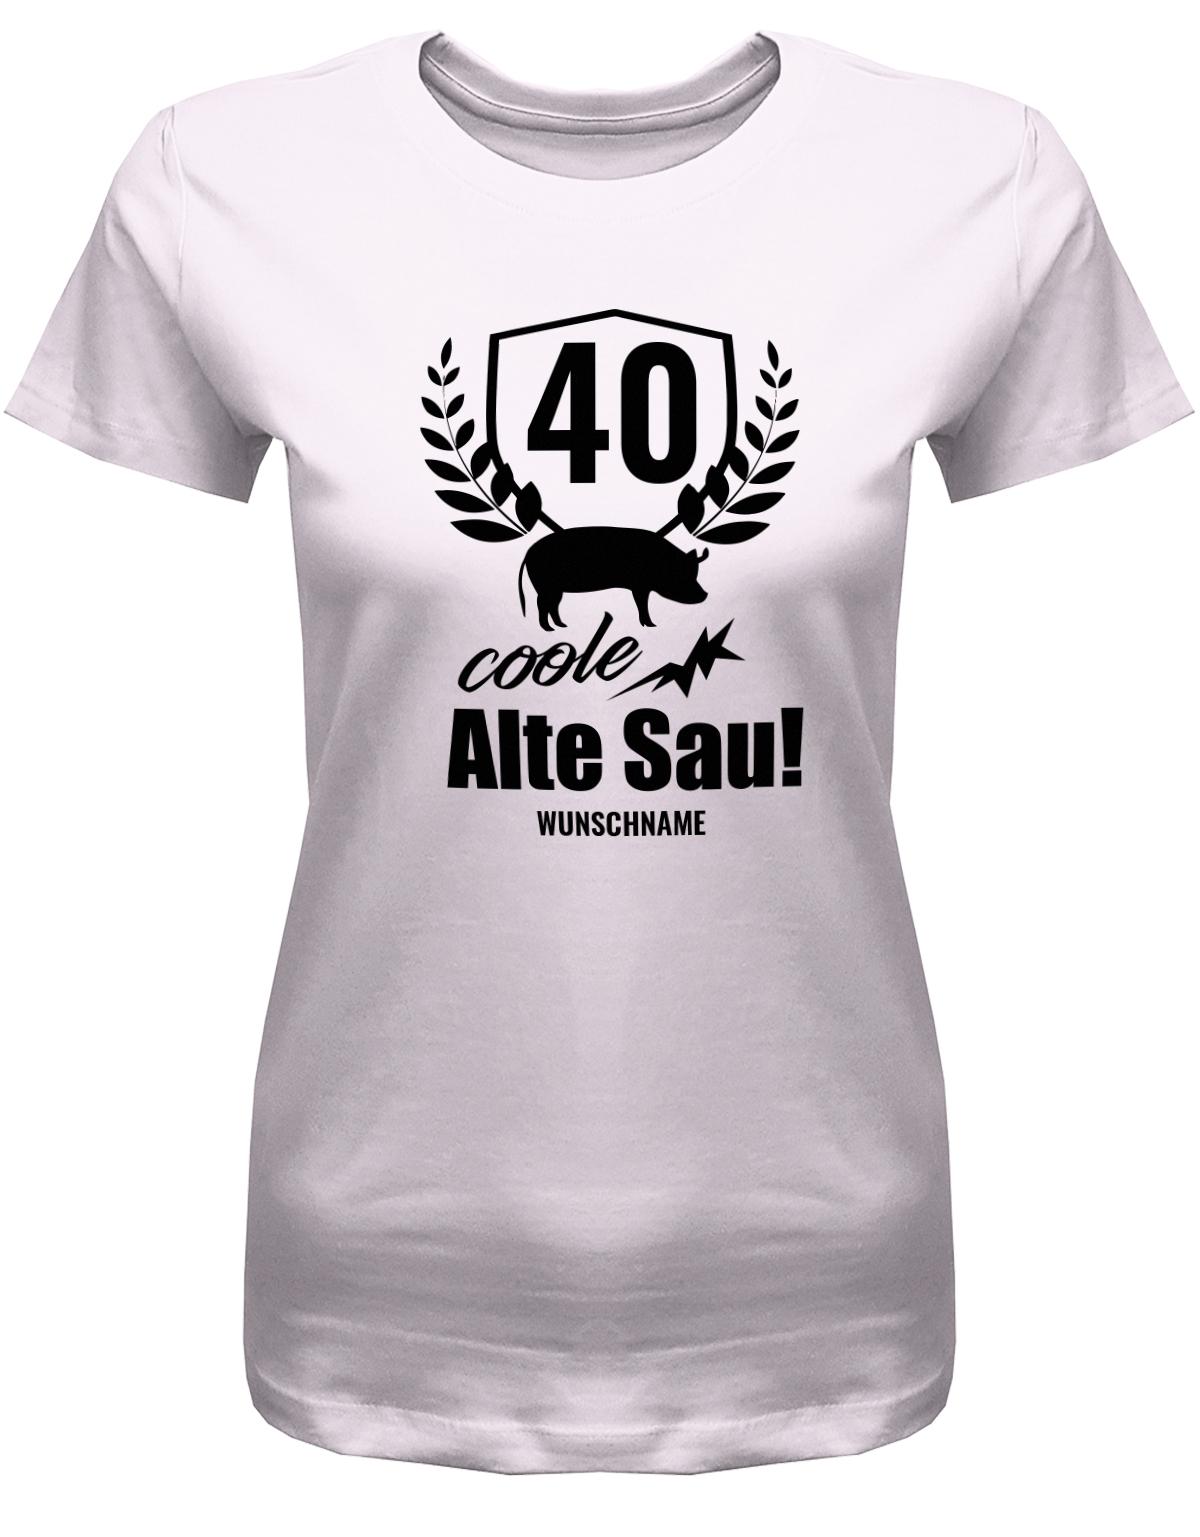 Lustiges T-Shirt zum 40. Geburtstag für die Frau Bedruckt mit 40 coole alte Sau personalisiert mit Name. Rosa